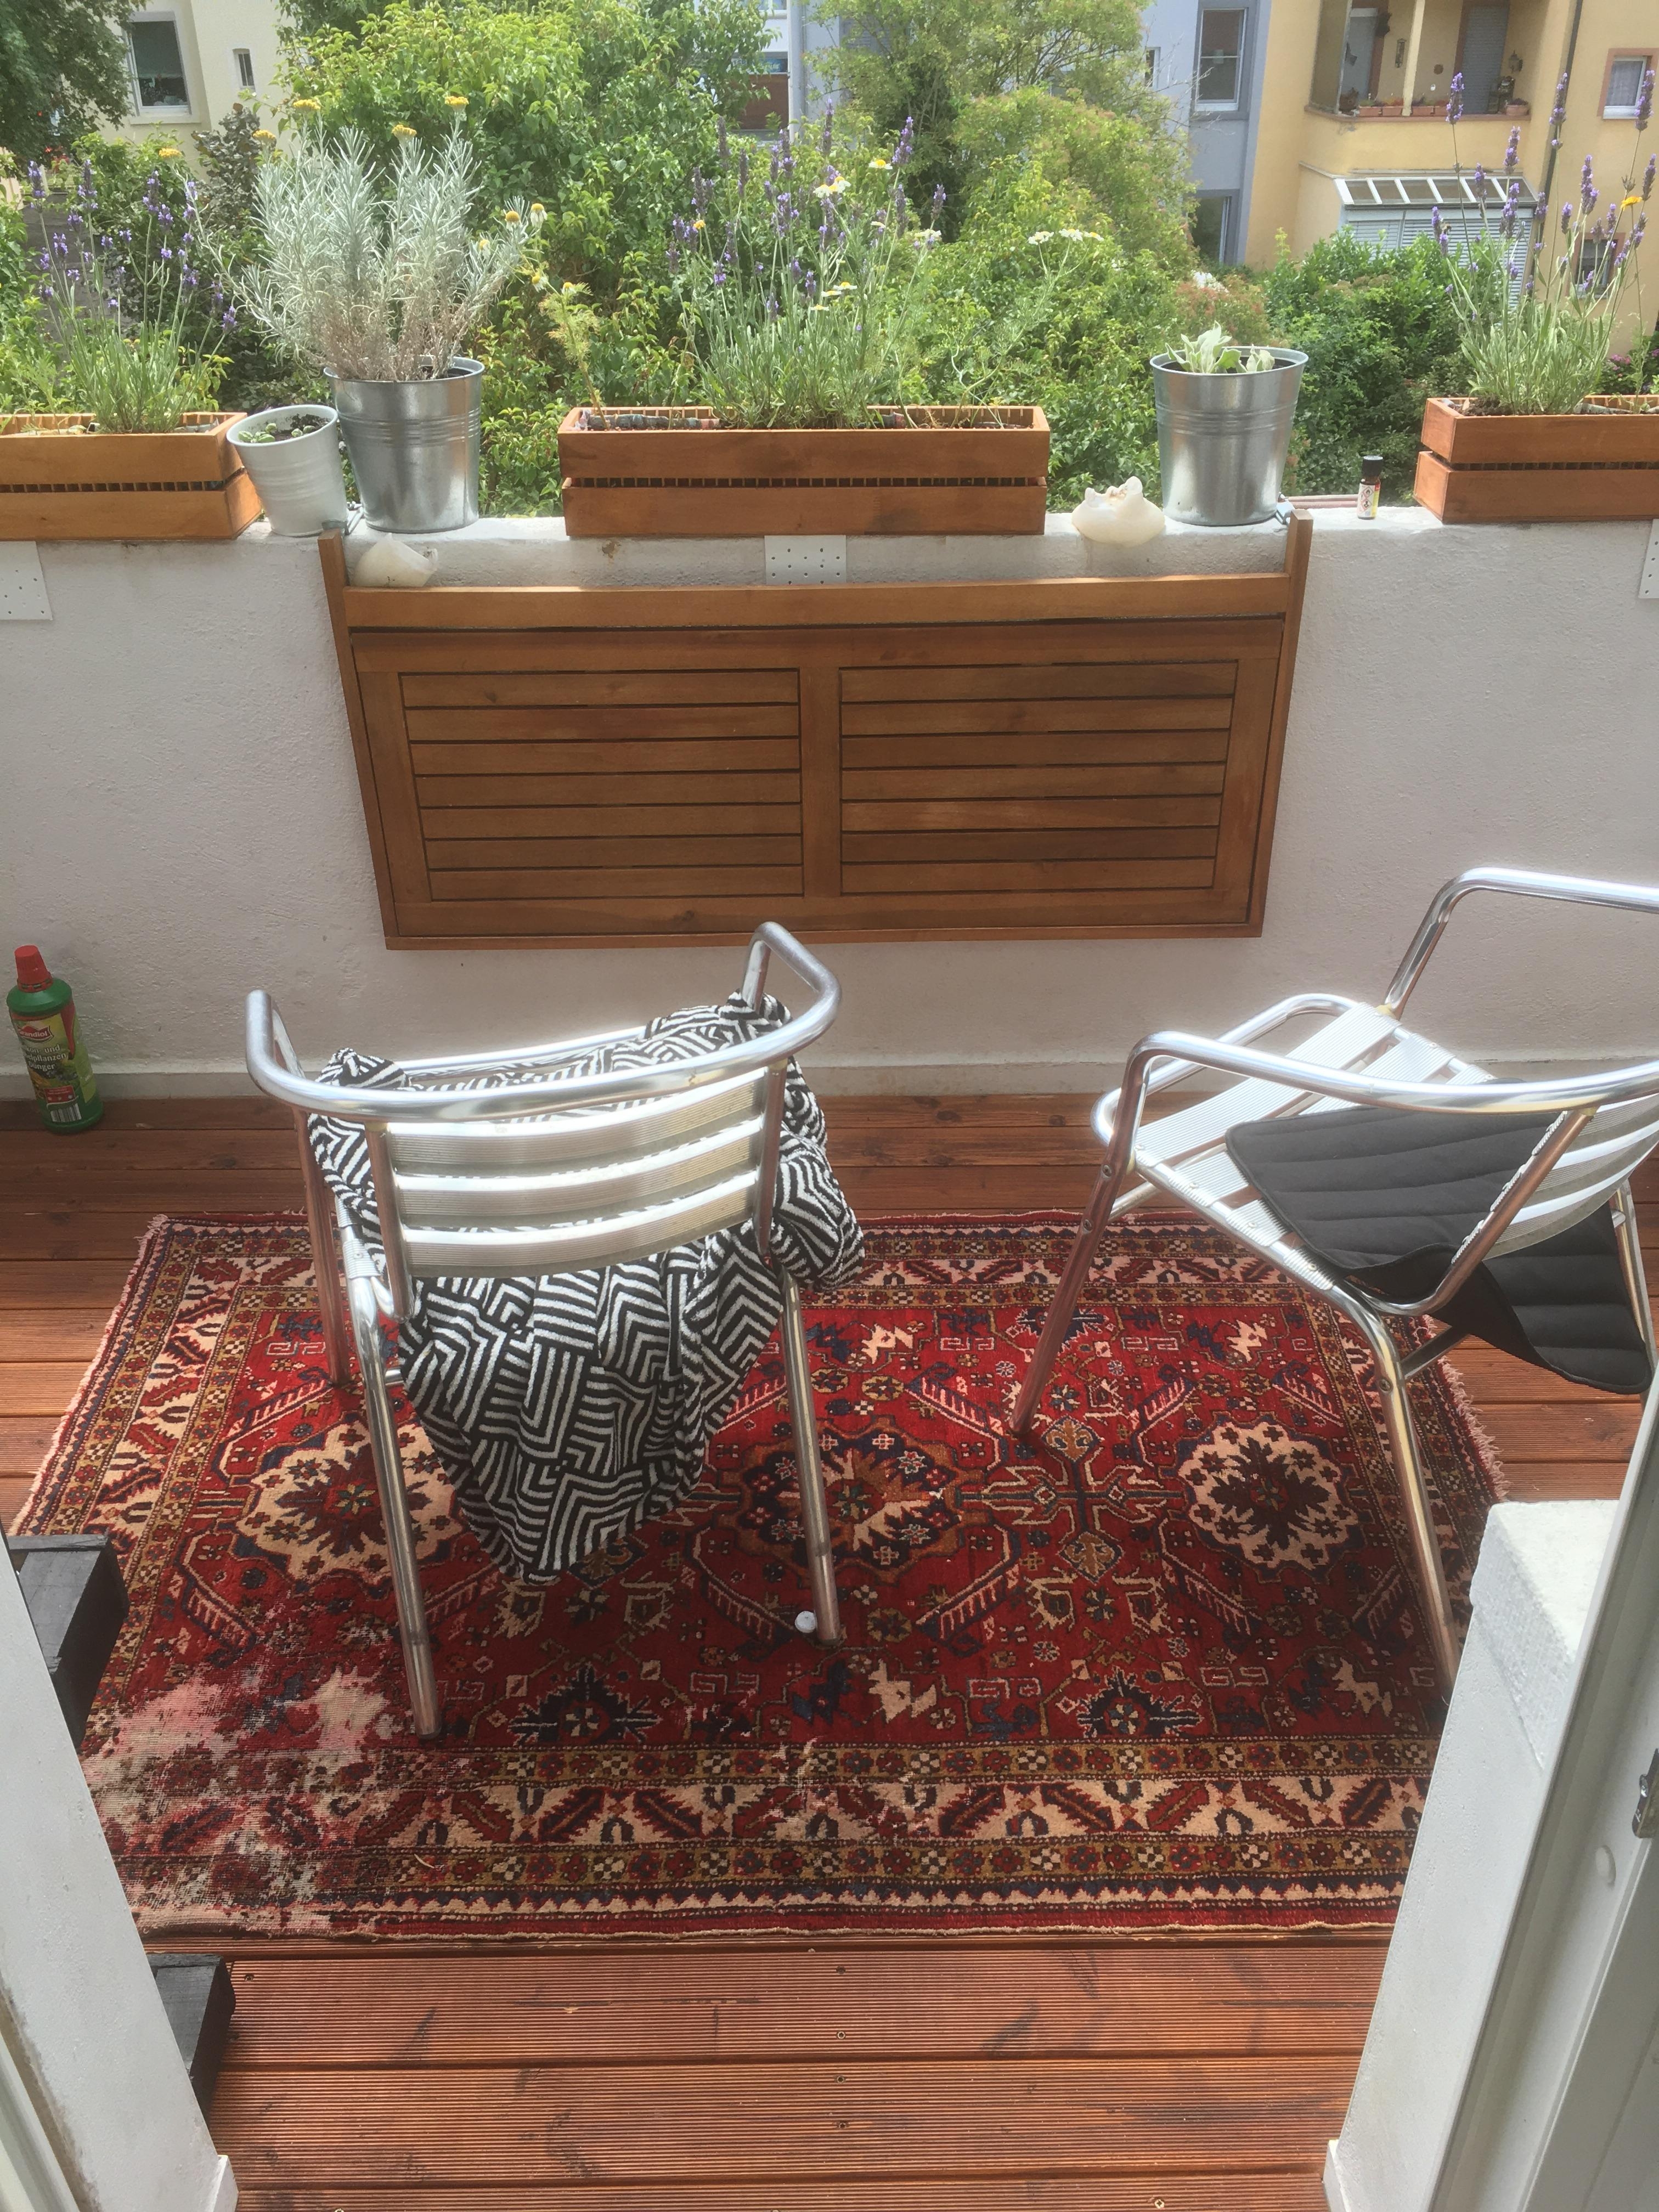 Ab auf die Dahamas 🌴
#balkonien #balkon #vintageteppich #kelim #perserteppich #orientteppich #outdoor #balkondiy